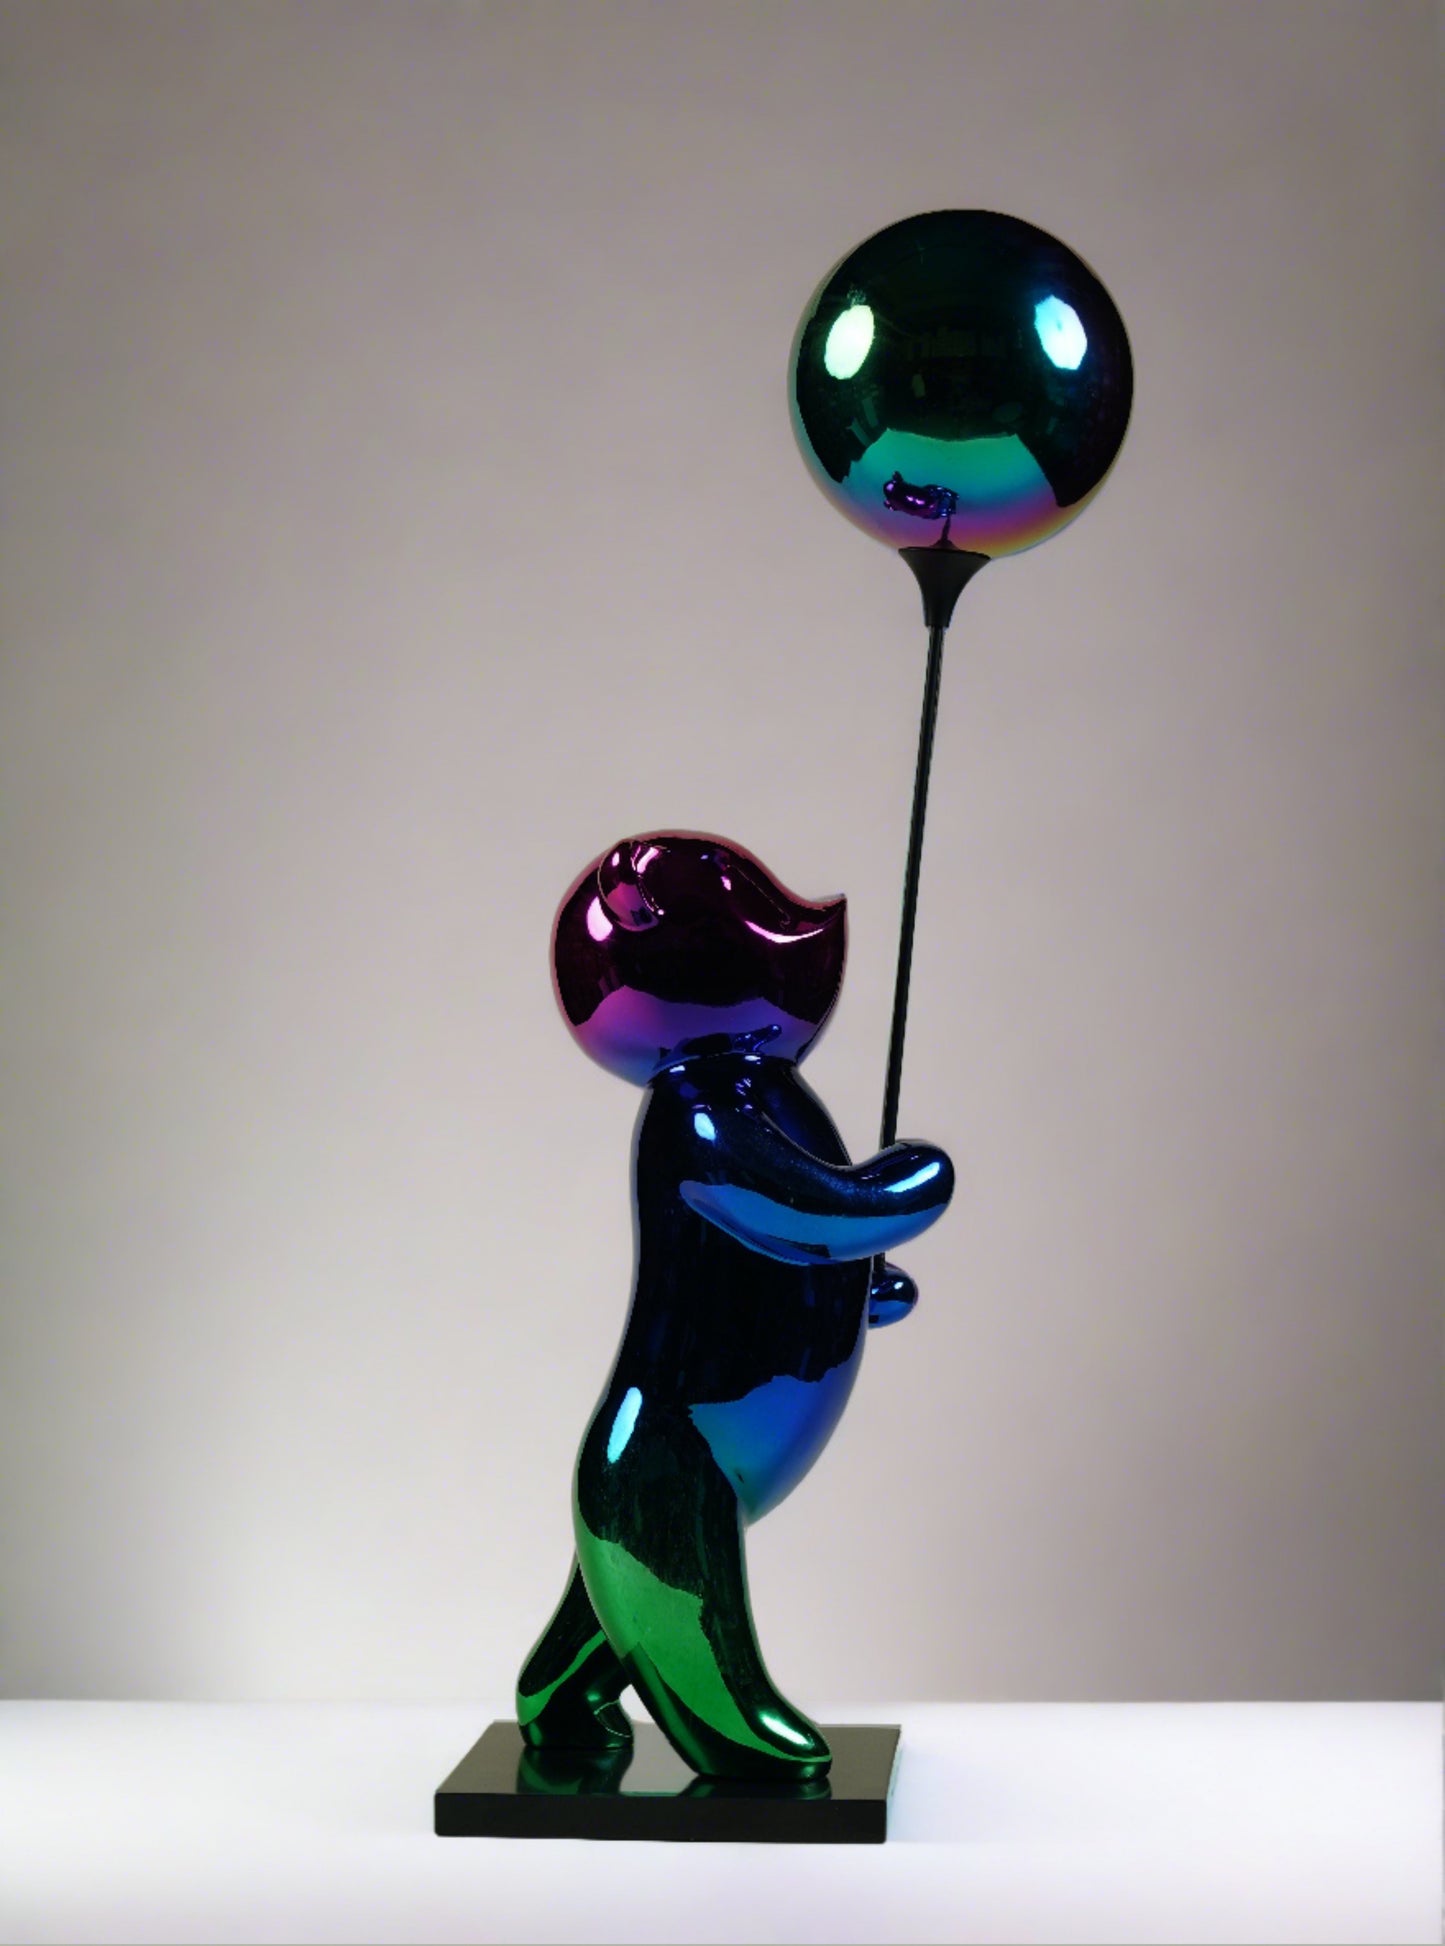 Bear Ballon Sculpture for Bar Decor